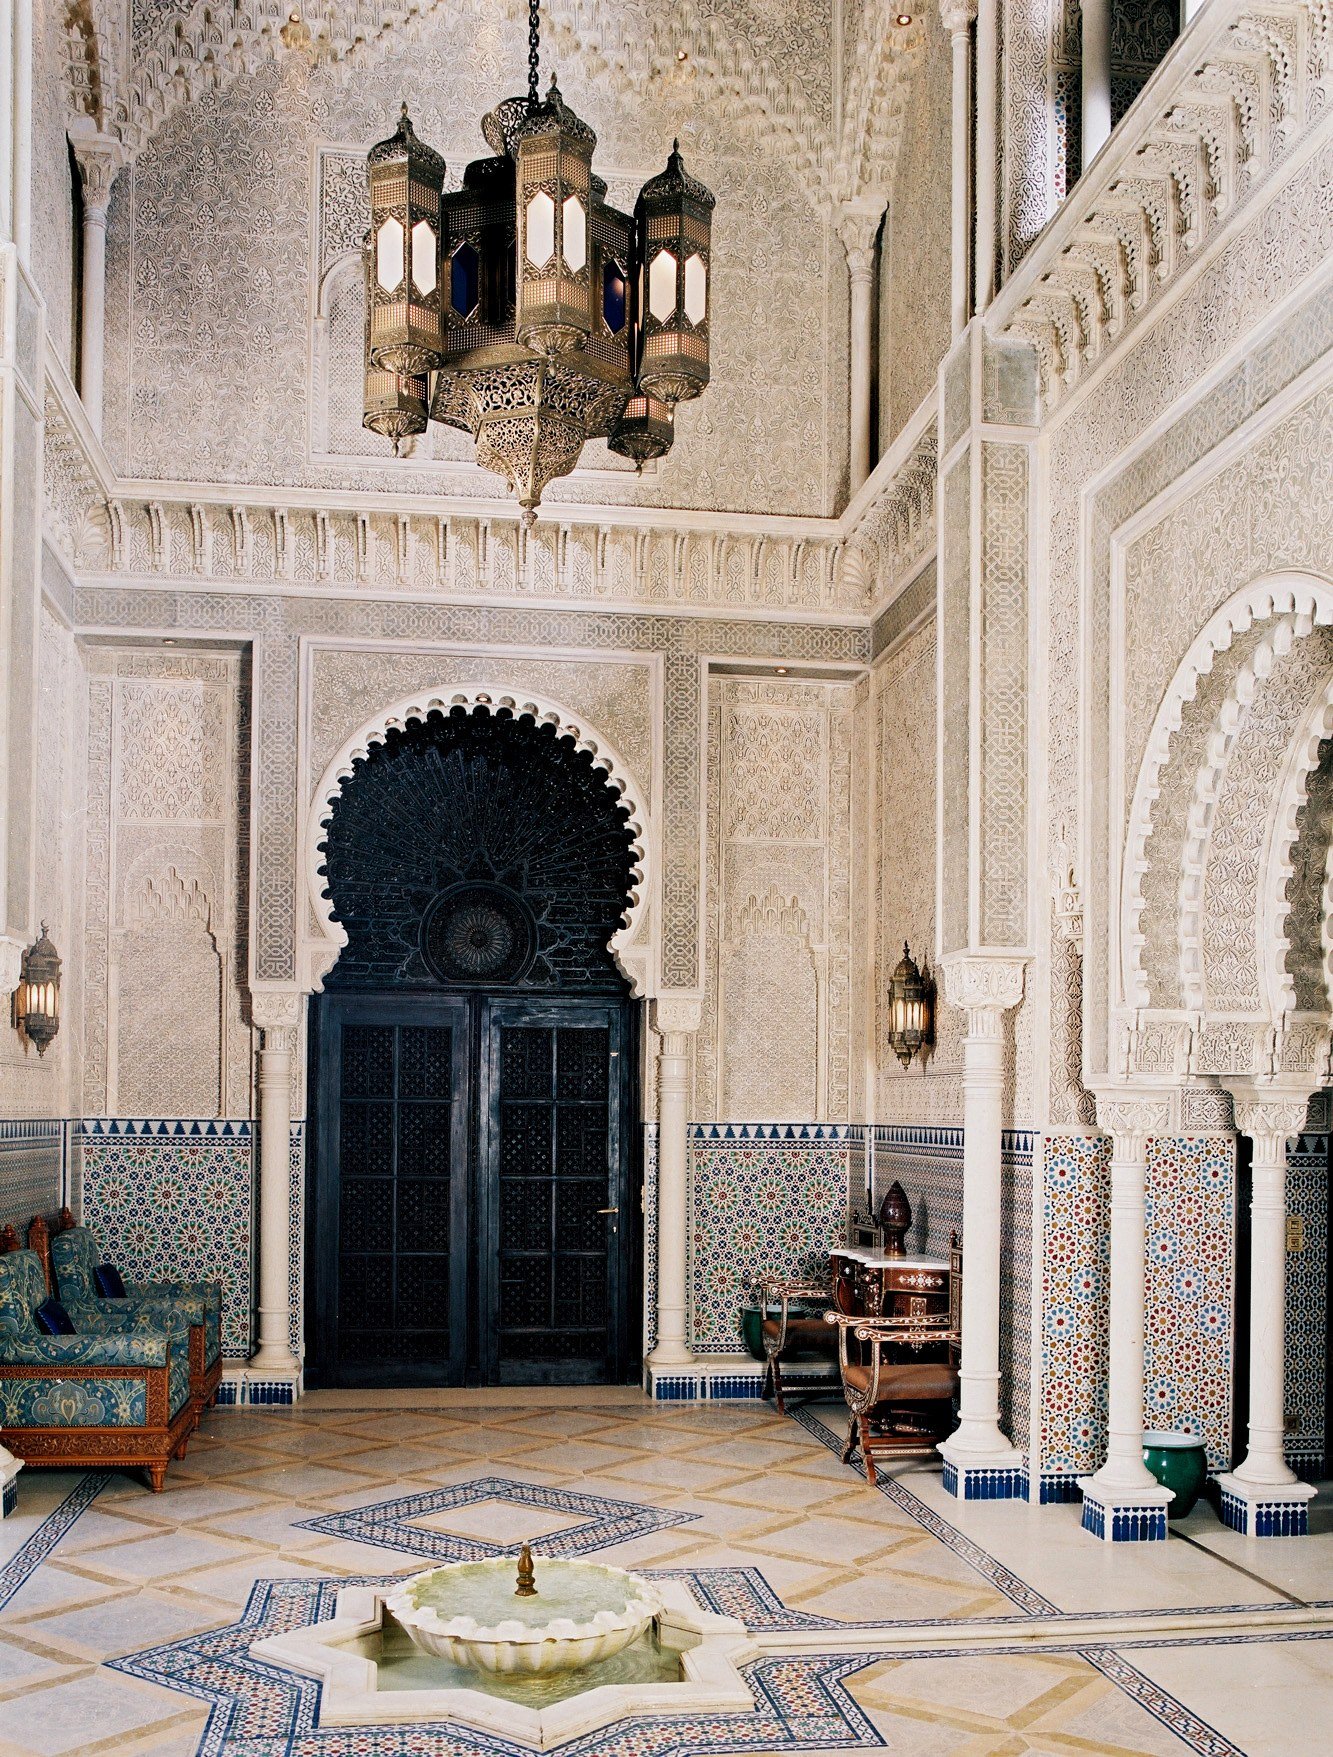 Мавританский стиль Альгамбра